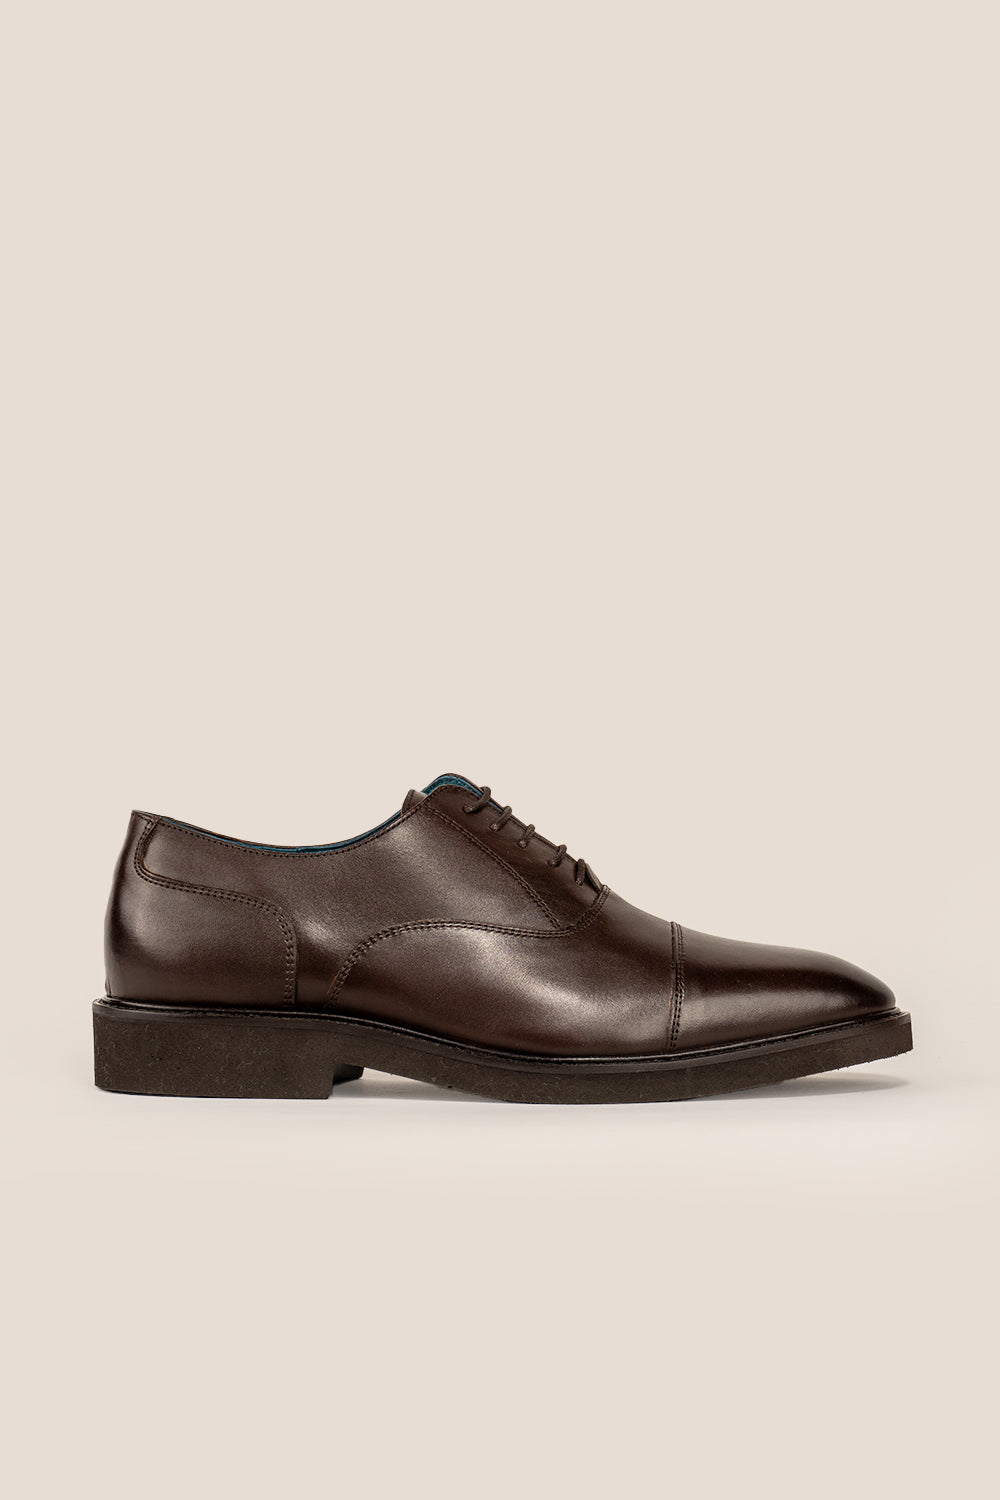 Flint Brown Oxford shoes oswin hyde